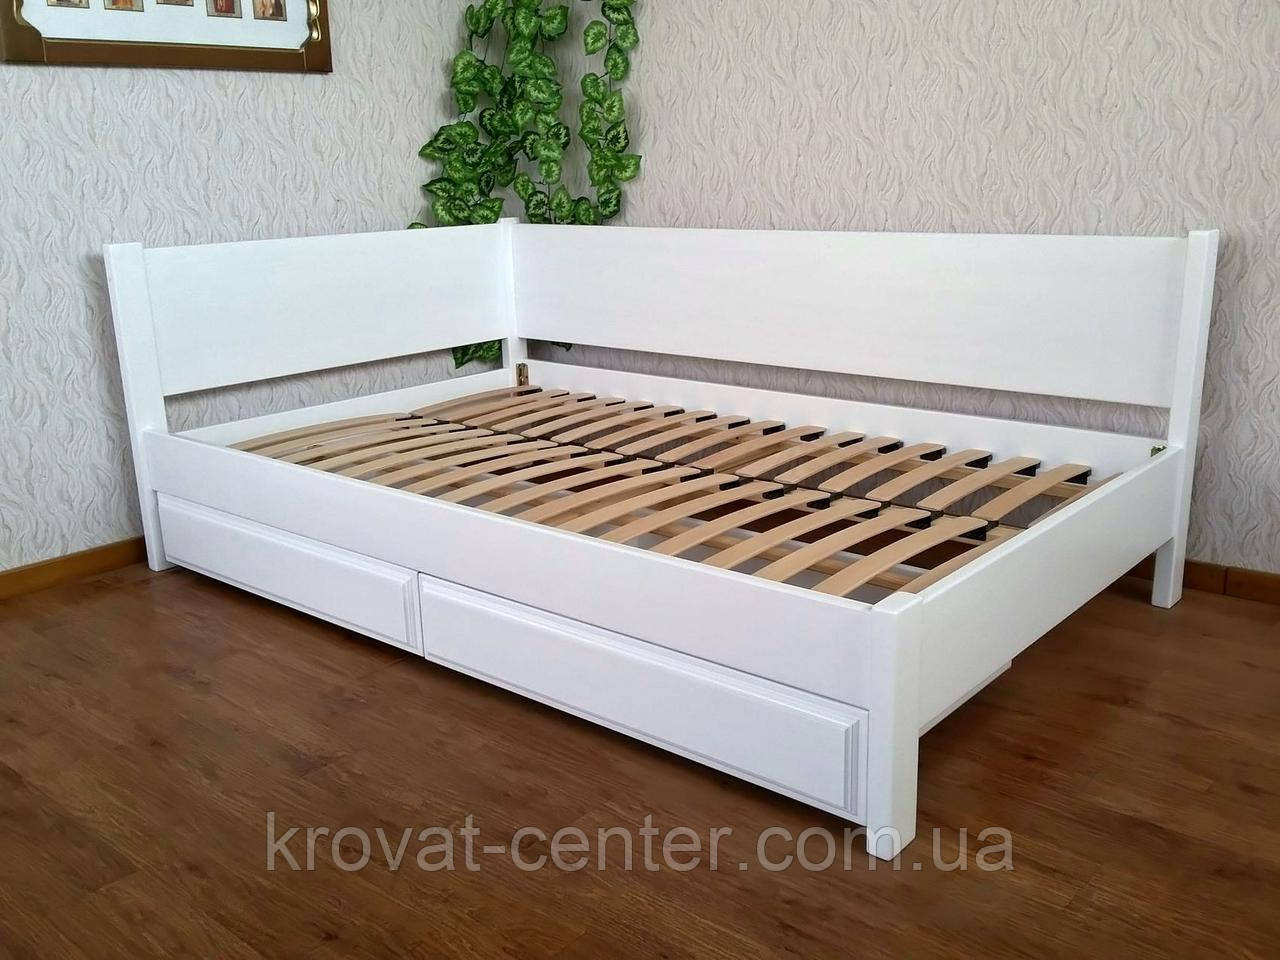 Біла полуторне ліжко з ящиками з масиву натурального дерева "Шанталь" від виробника